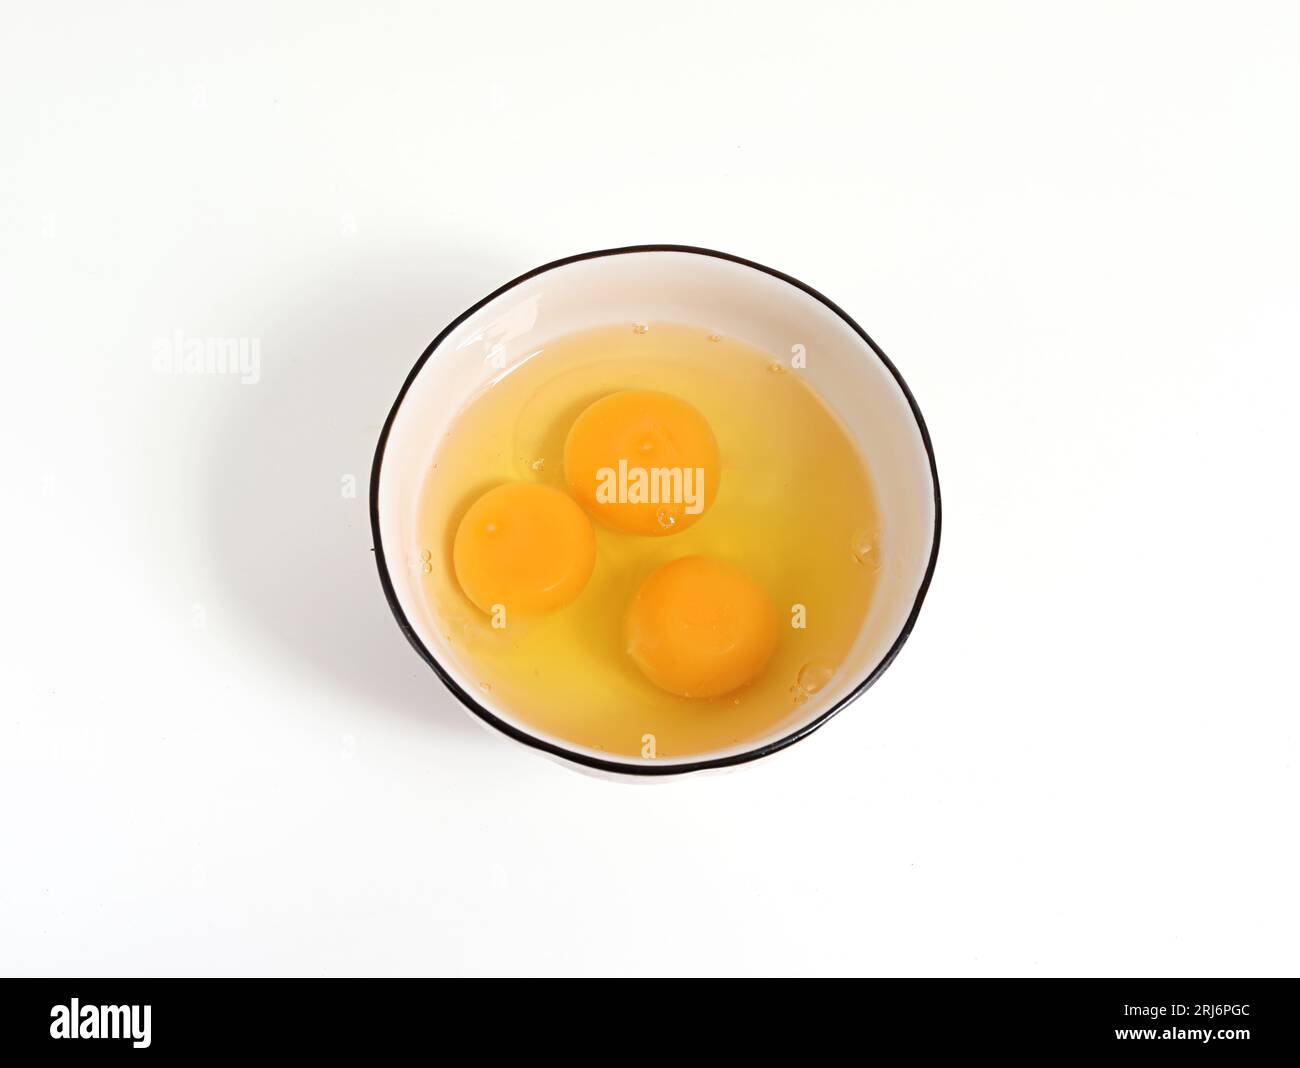 Immagine ravvicinata dei tuorli d'uovo in una ciotola su una superficie bianca e piatta Foto Stock